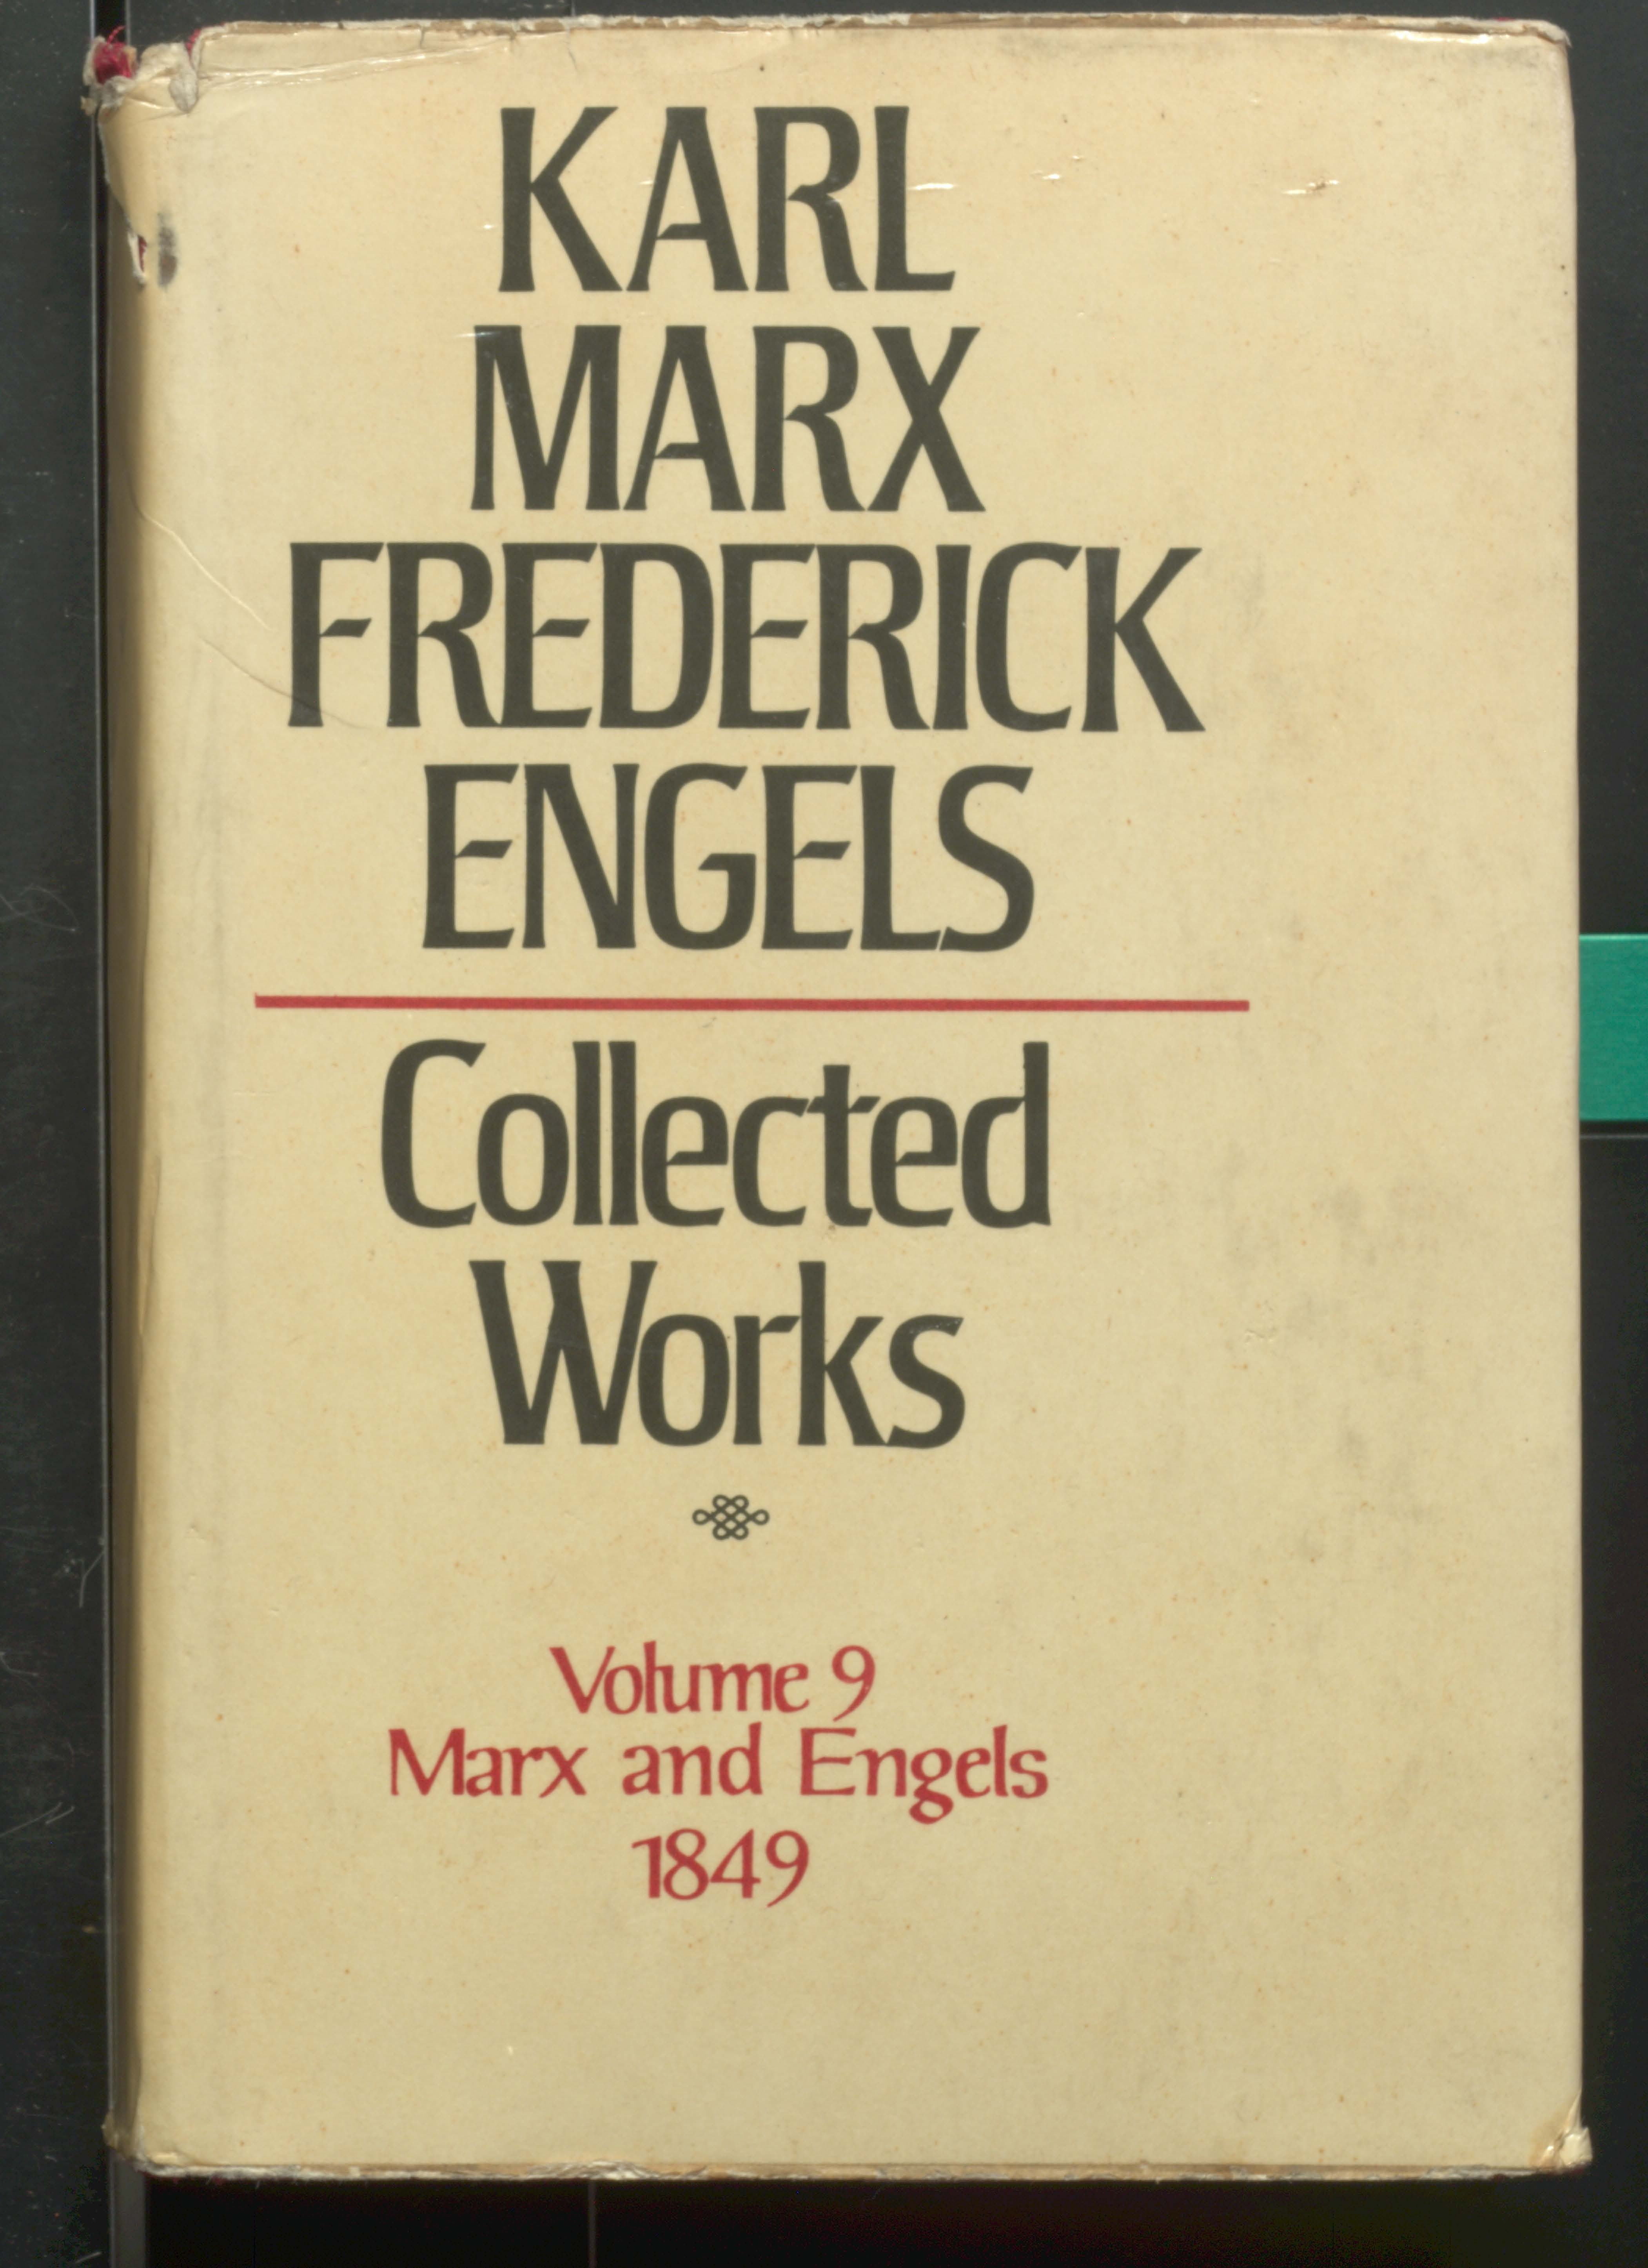 KARL MARX TREDERIEK ENGELS COLLECTED WORKS (VOL-9)1849